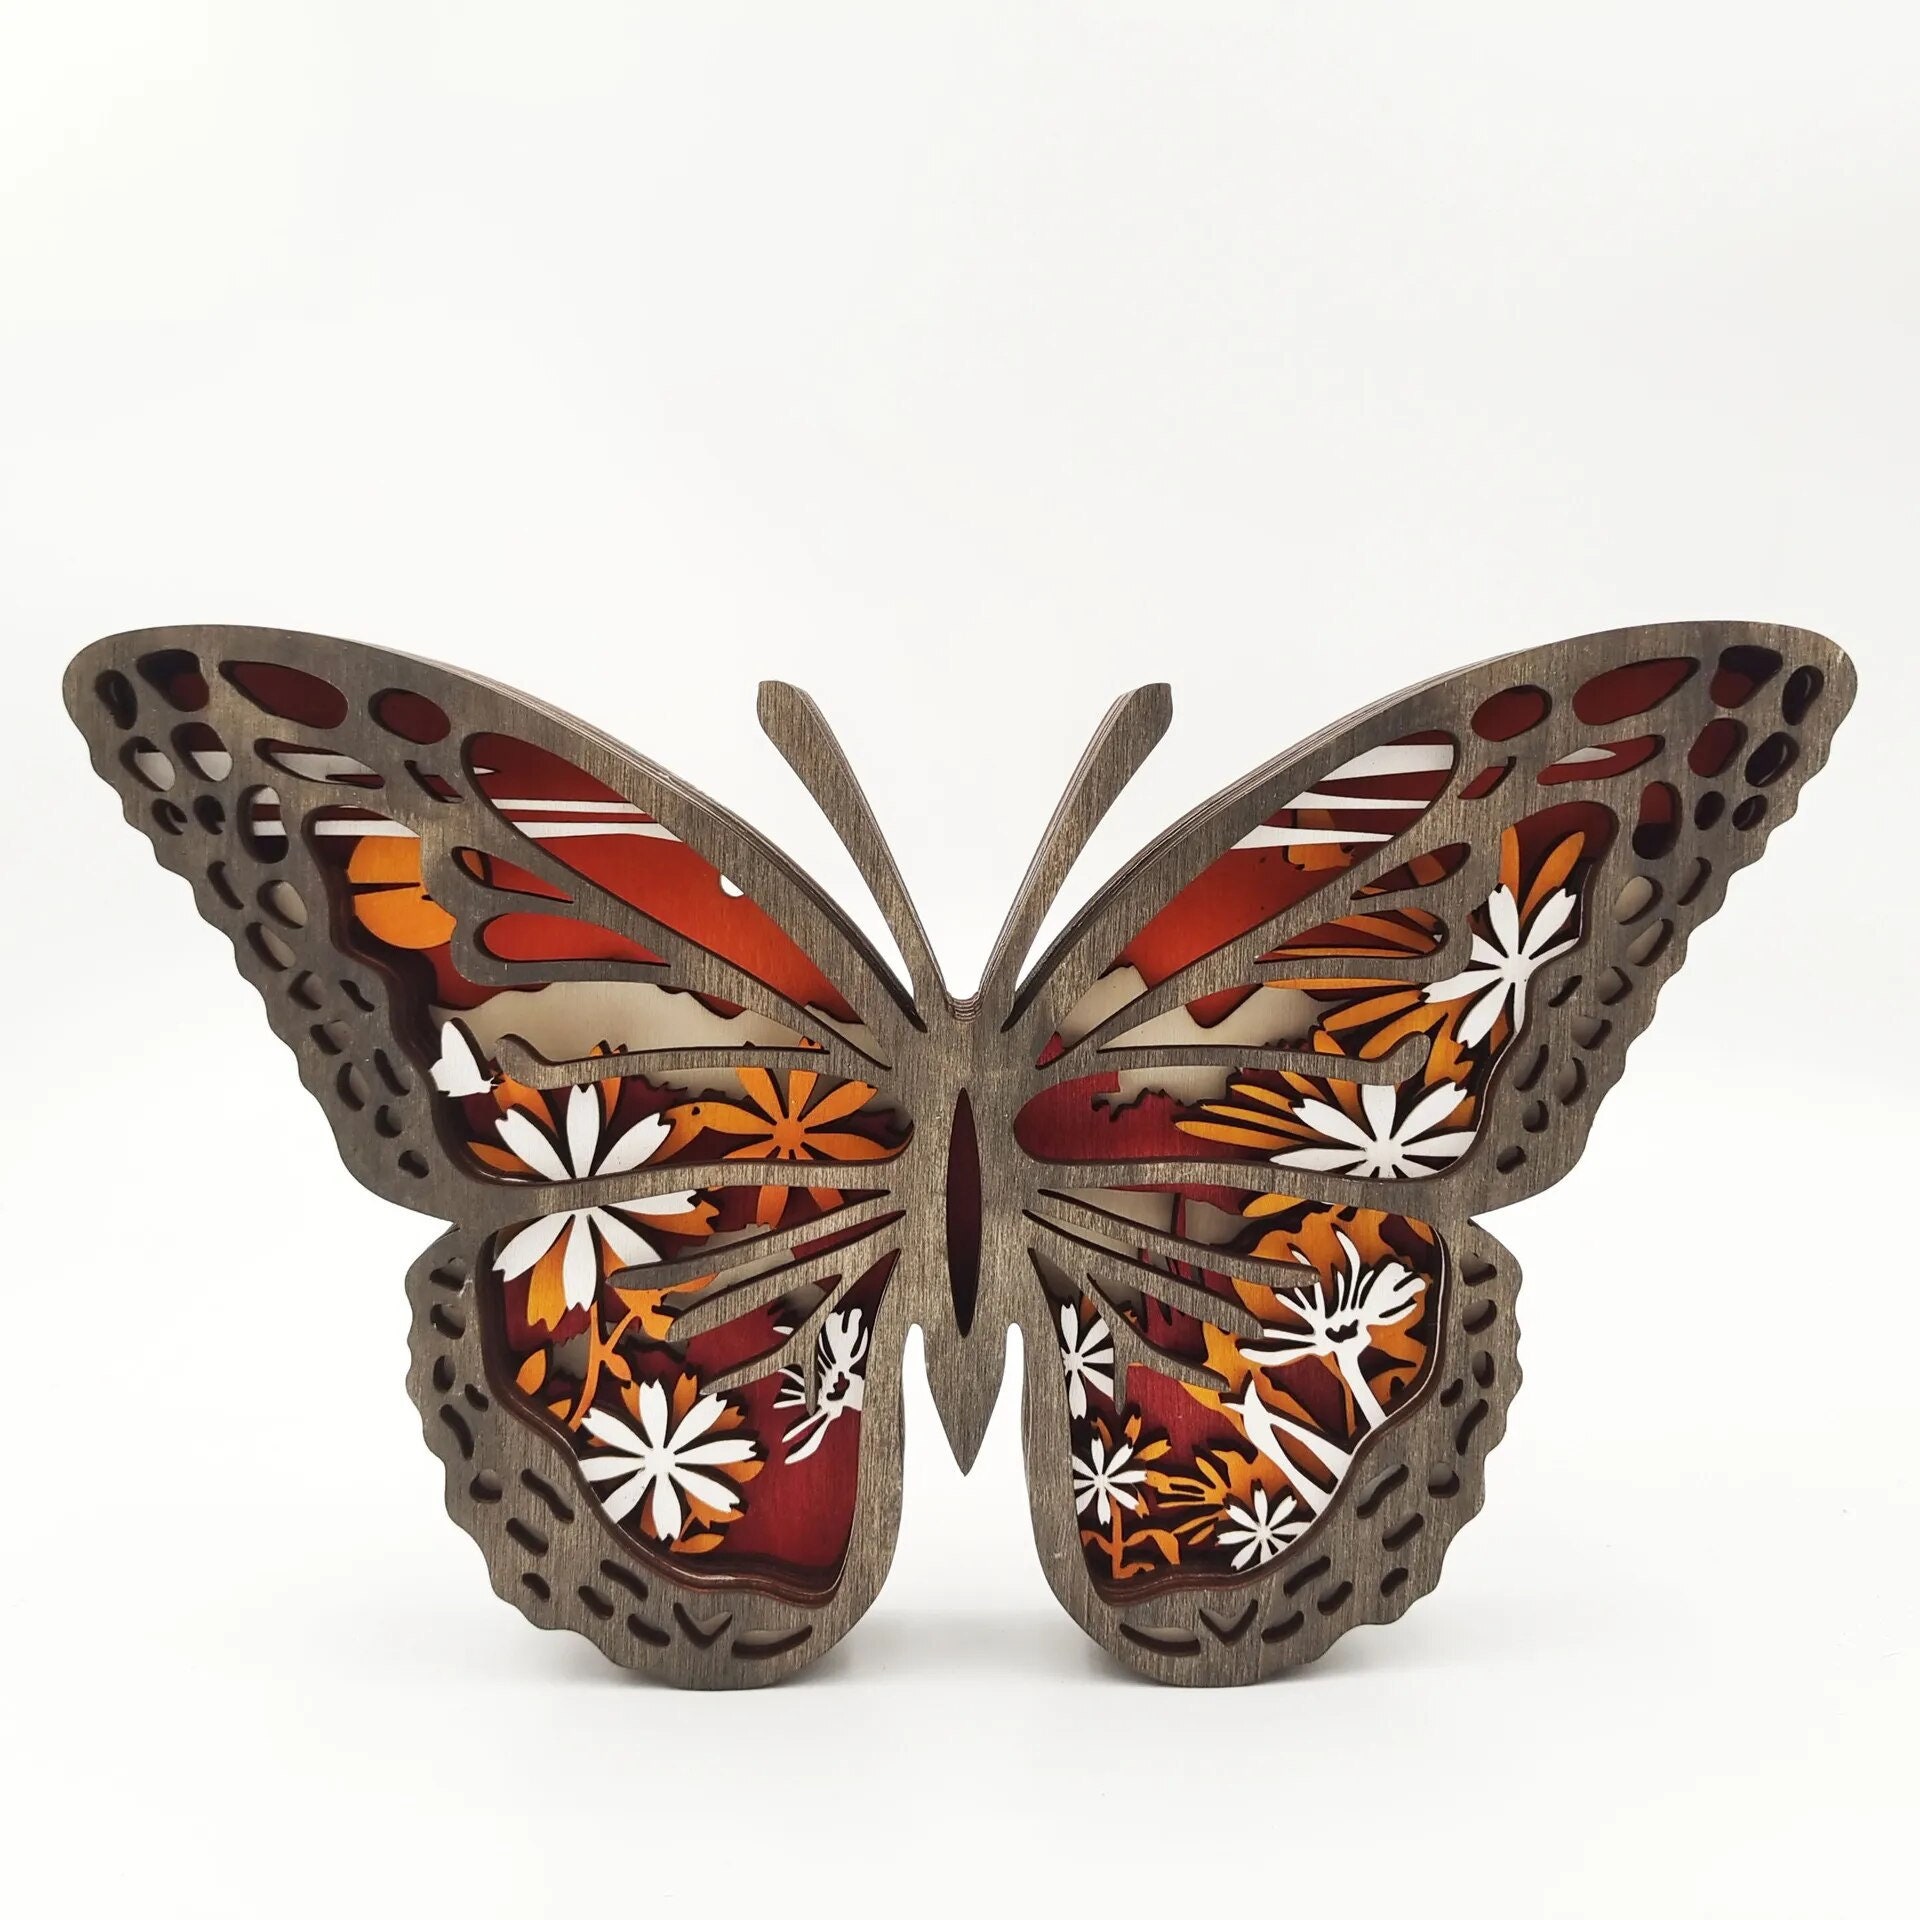  ALOMIN Letras decorativas de madera de mariposa 3D de